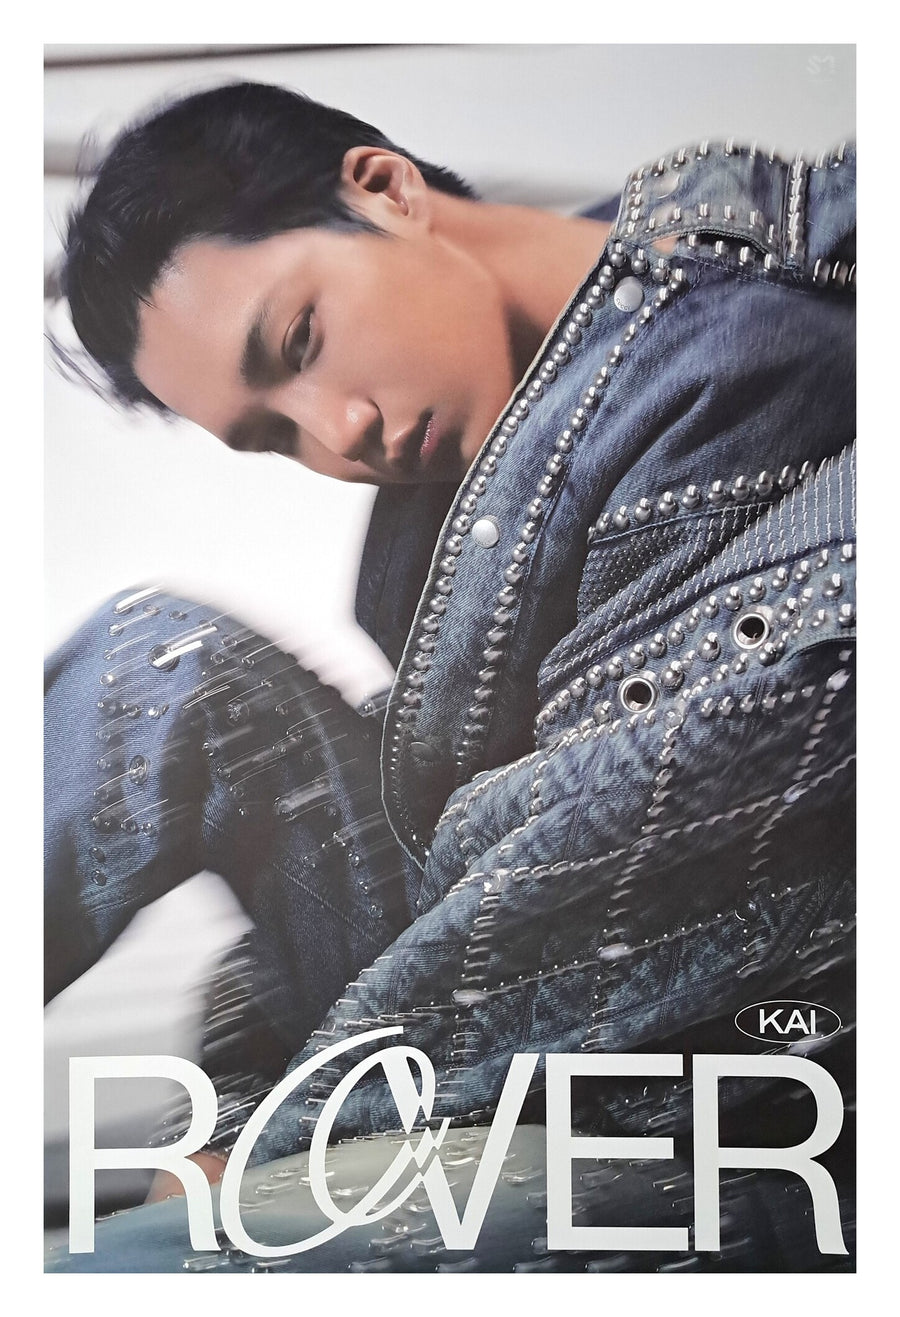 Kai 3rd Mini Album Rover (Sleeve Ver.) Official Poster - Photo Concept 3